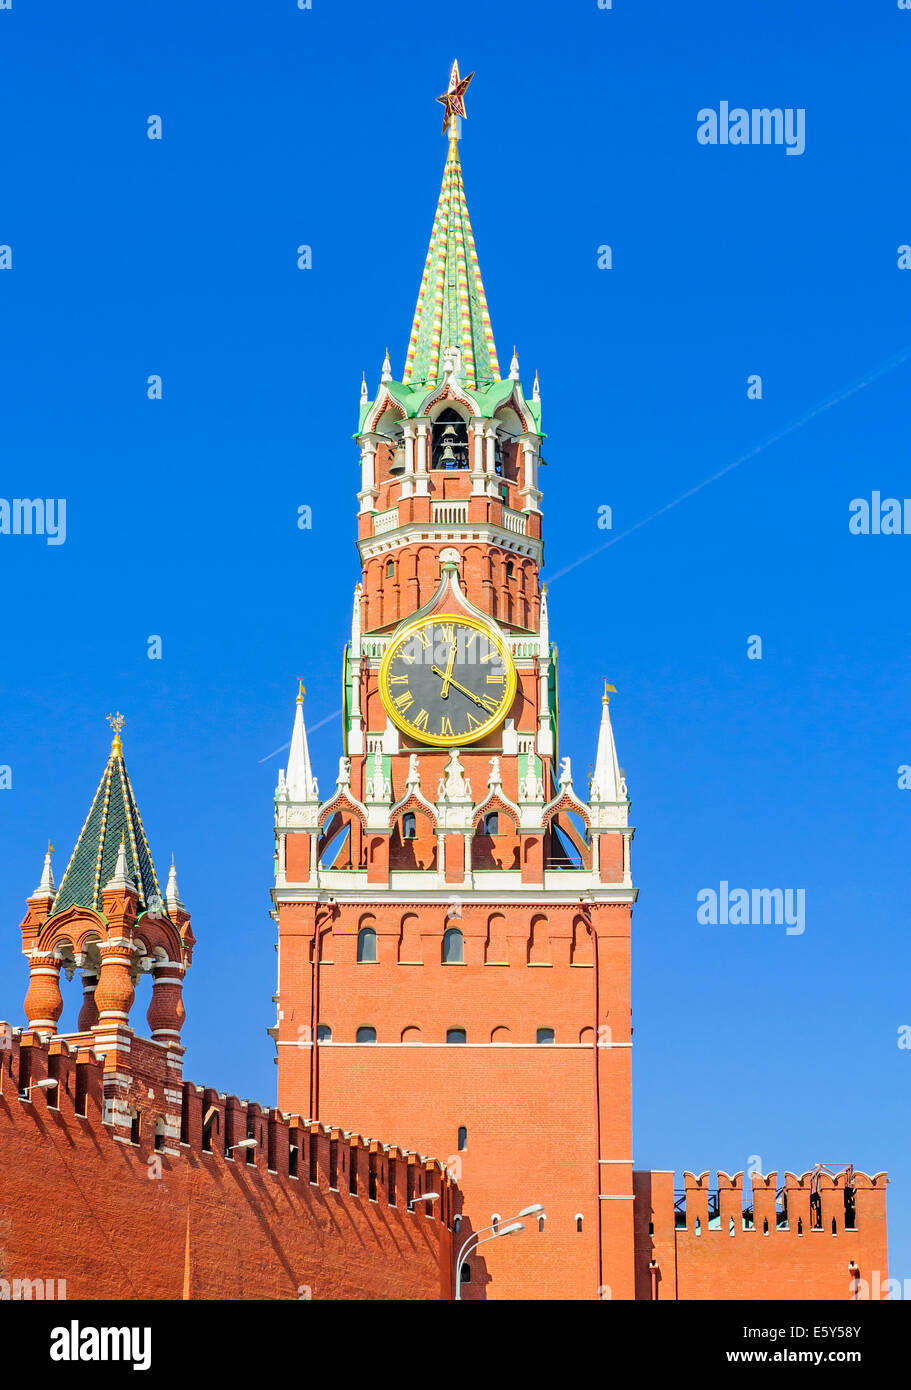 Die Spasskaja-Turm ist der Hauptturm mit einer durch-Passage an der Ostwand des Moskauer Kremls, mit Blick auf das rote Stockfoto